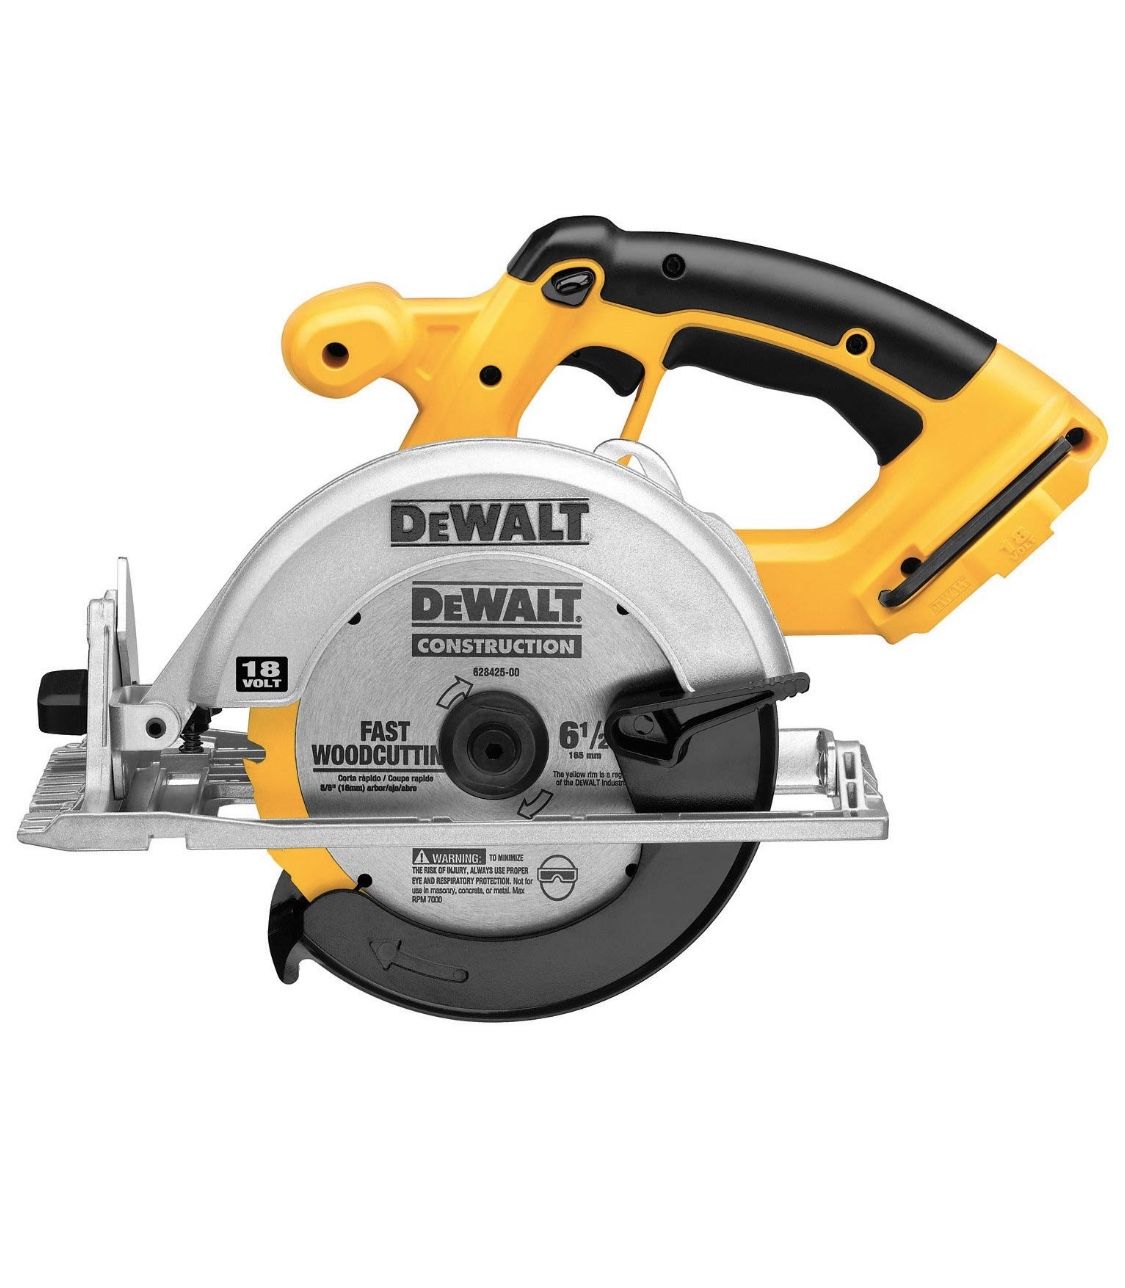 DEWALT DC390B 6-1/2-Inch 18-Volt Cordless Circular Saw (Tool Only)